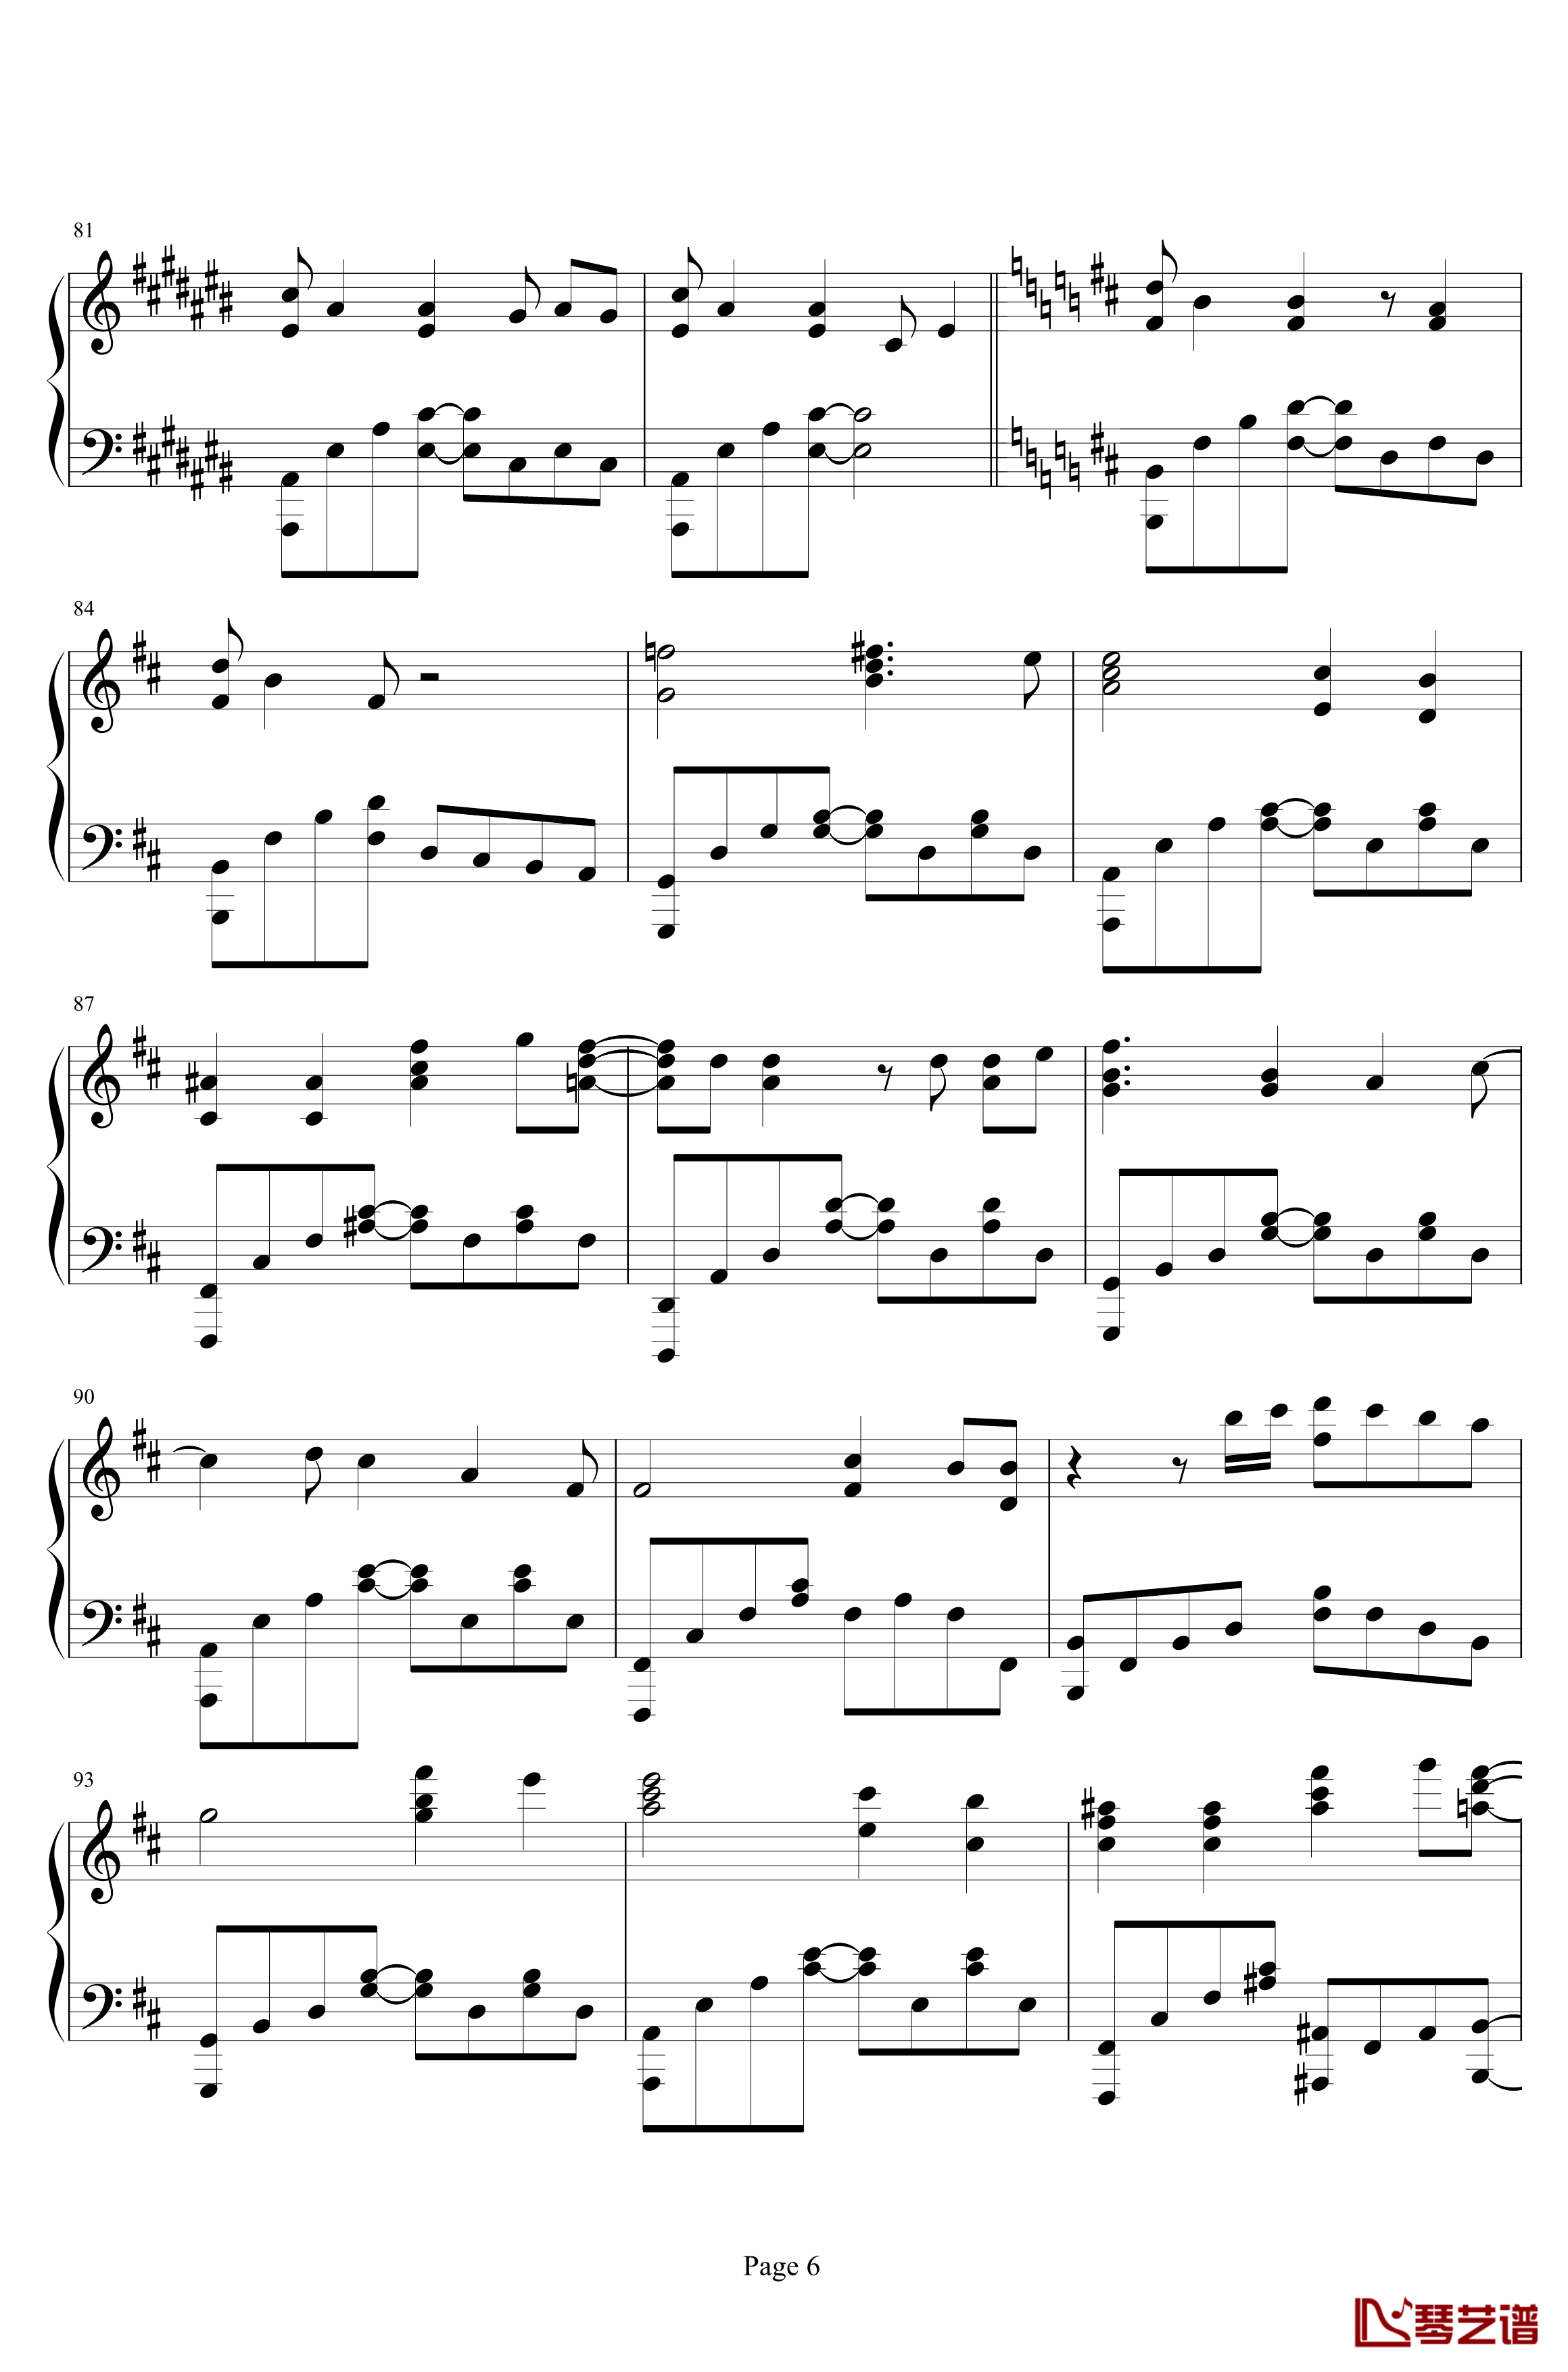 凹凸世界三部曲钢琴谱-Kyle Xian